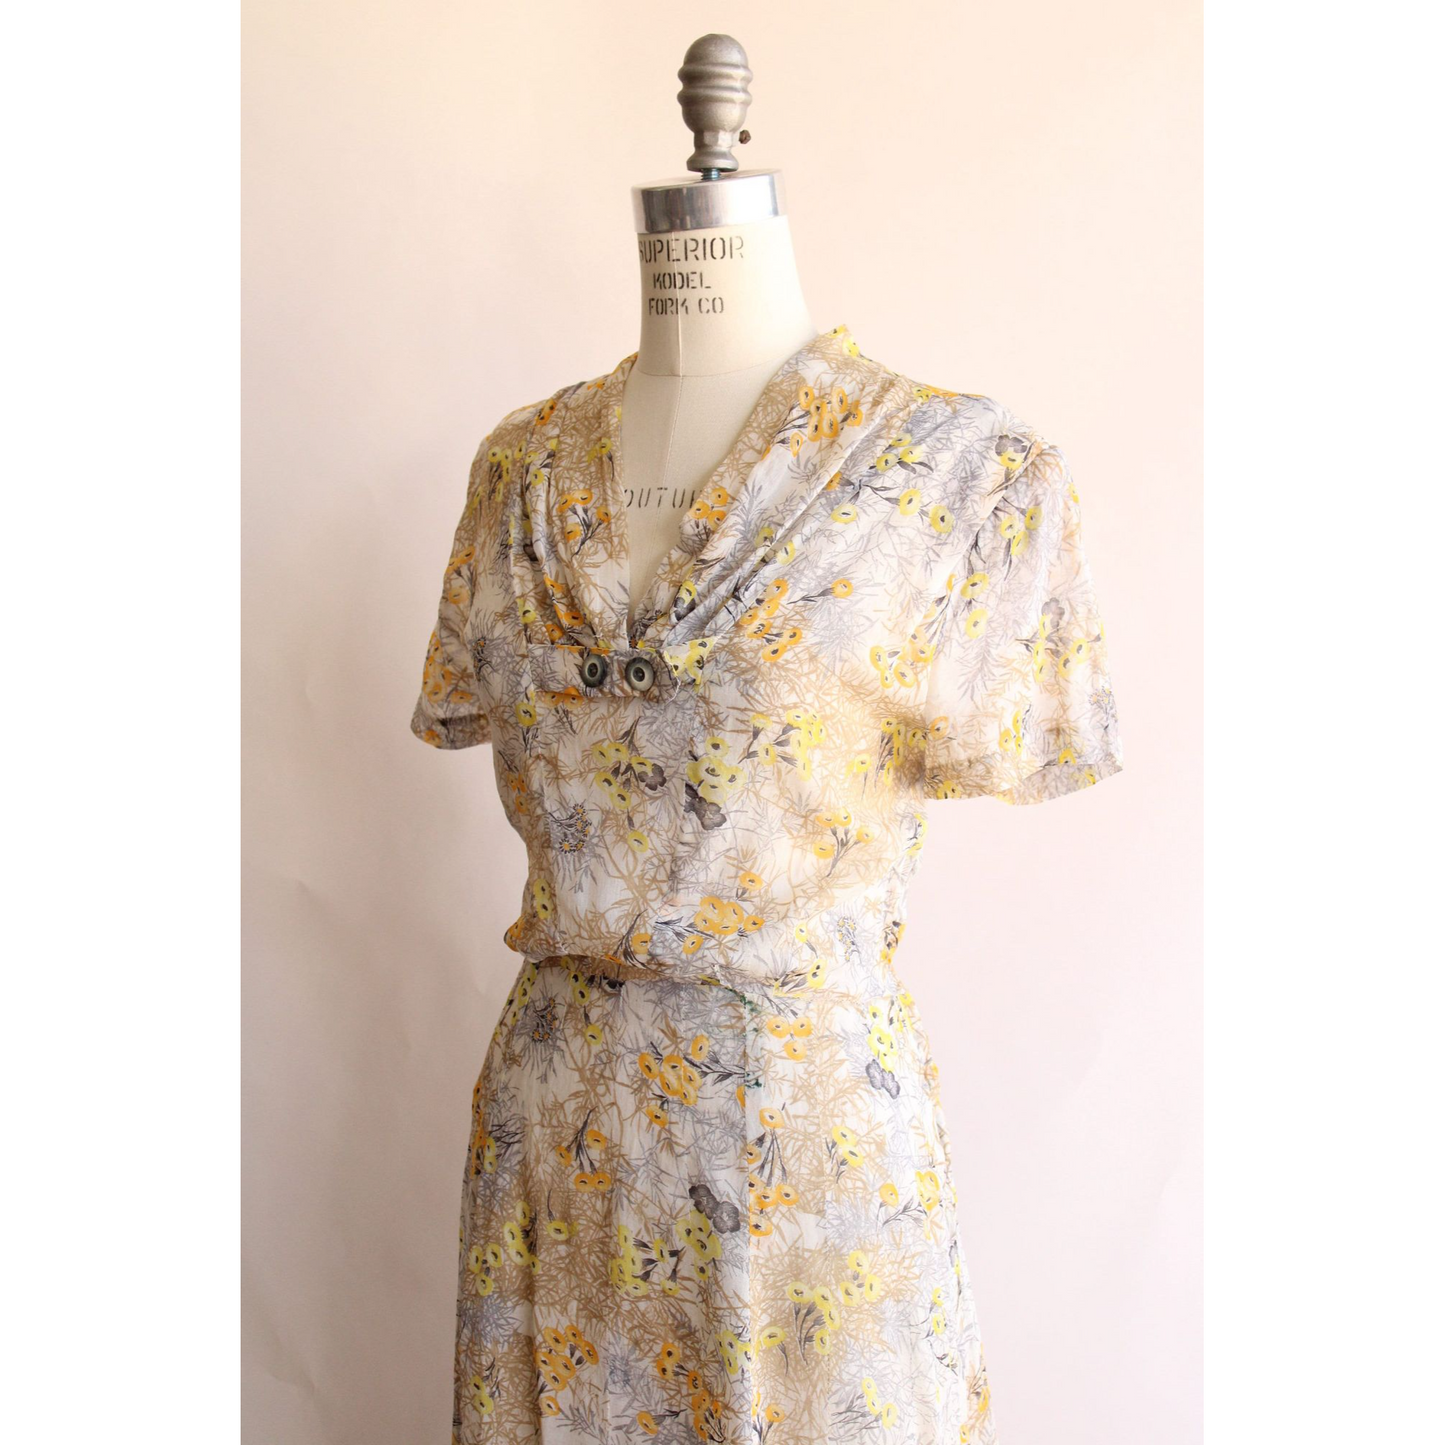 Vintage 1940s Wildflower Print Dress